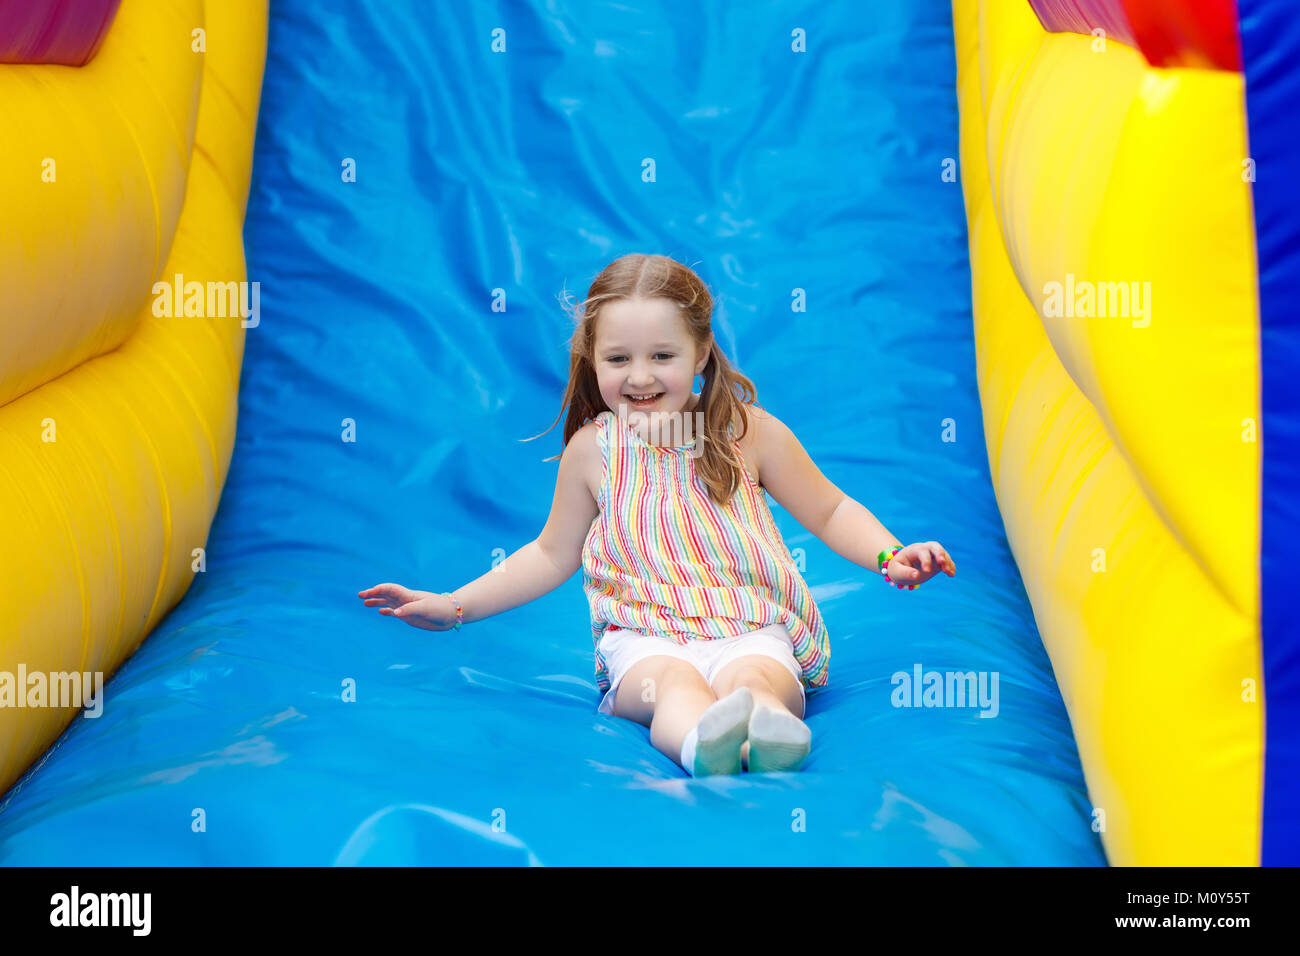 Kind springen auf bunten Spielplatz Trampolin. Kinder springen in Aufblasbare bounce Burg auf Kindergarten Geburtstag Aktivität und spielen Mitte für Sie Stockfoto